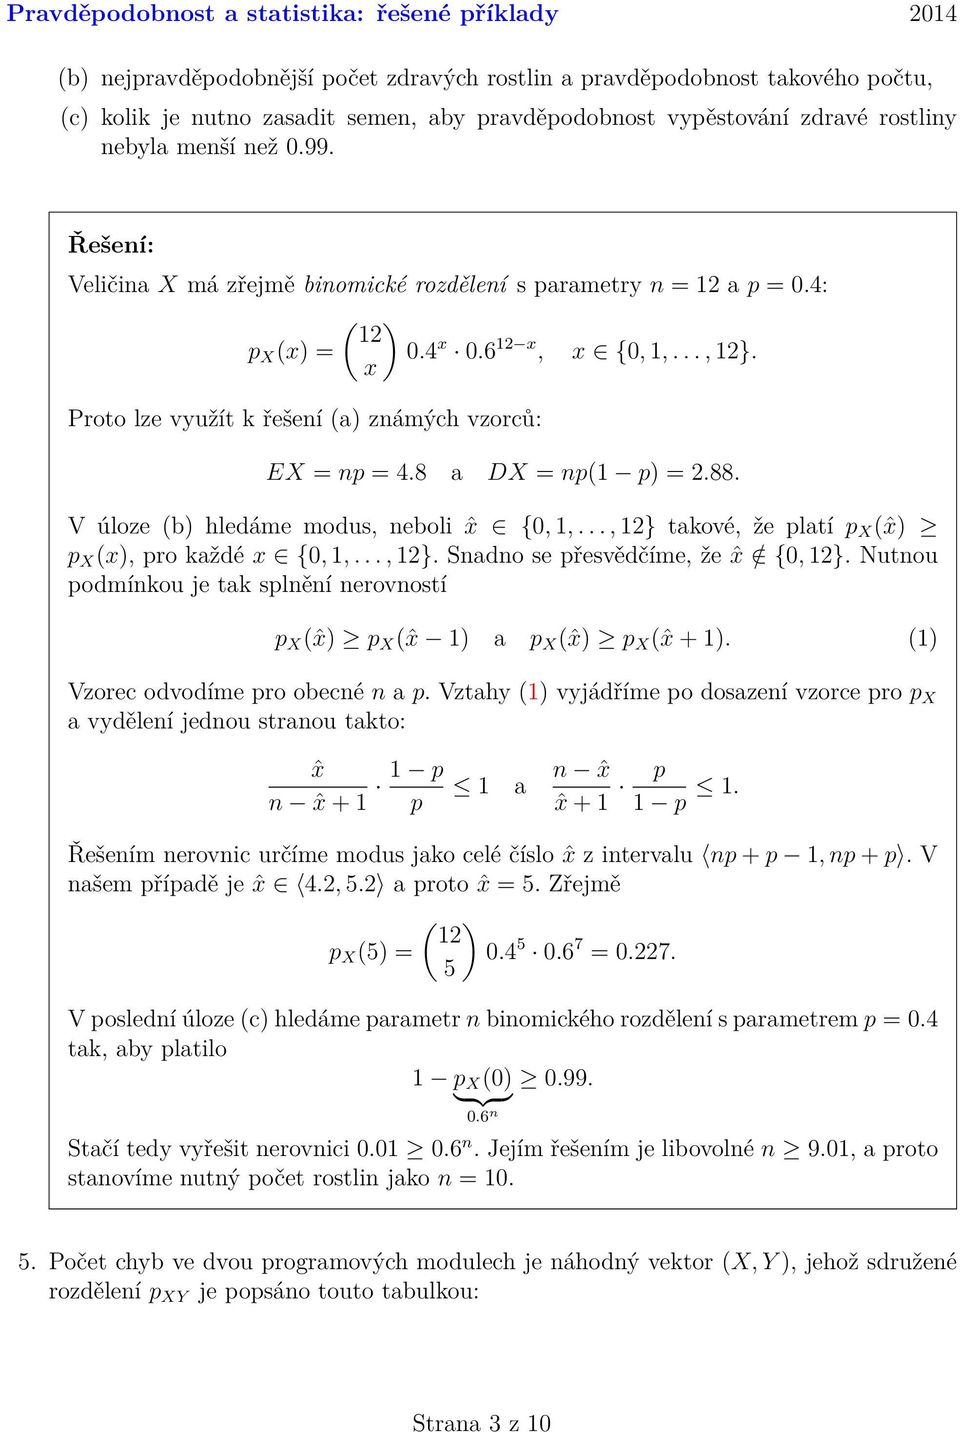 modus, neboli ˆx {0, 1,, 1} takové, že platí p X (ˆx) p X (x), pro každé x {0, 1,, 1} Snadno se přesvědčíme, že ˆx / {0, 1} Nutnou podmínkou je tak splnění nerovností p X (ˆx) p X (ˆx 1) a p X (ˆx) p